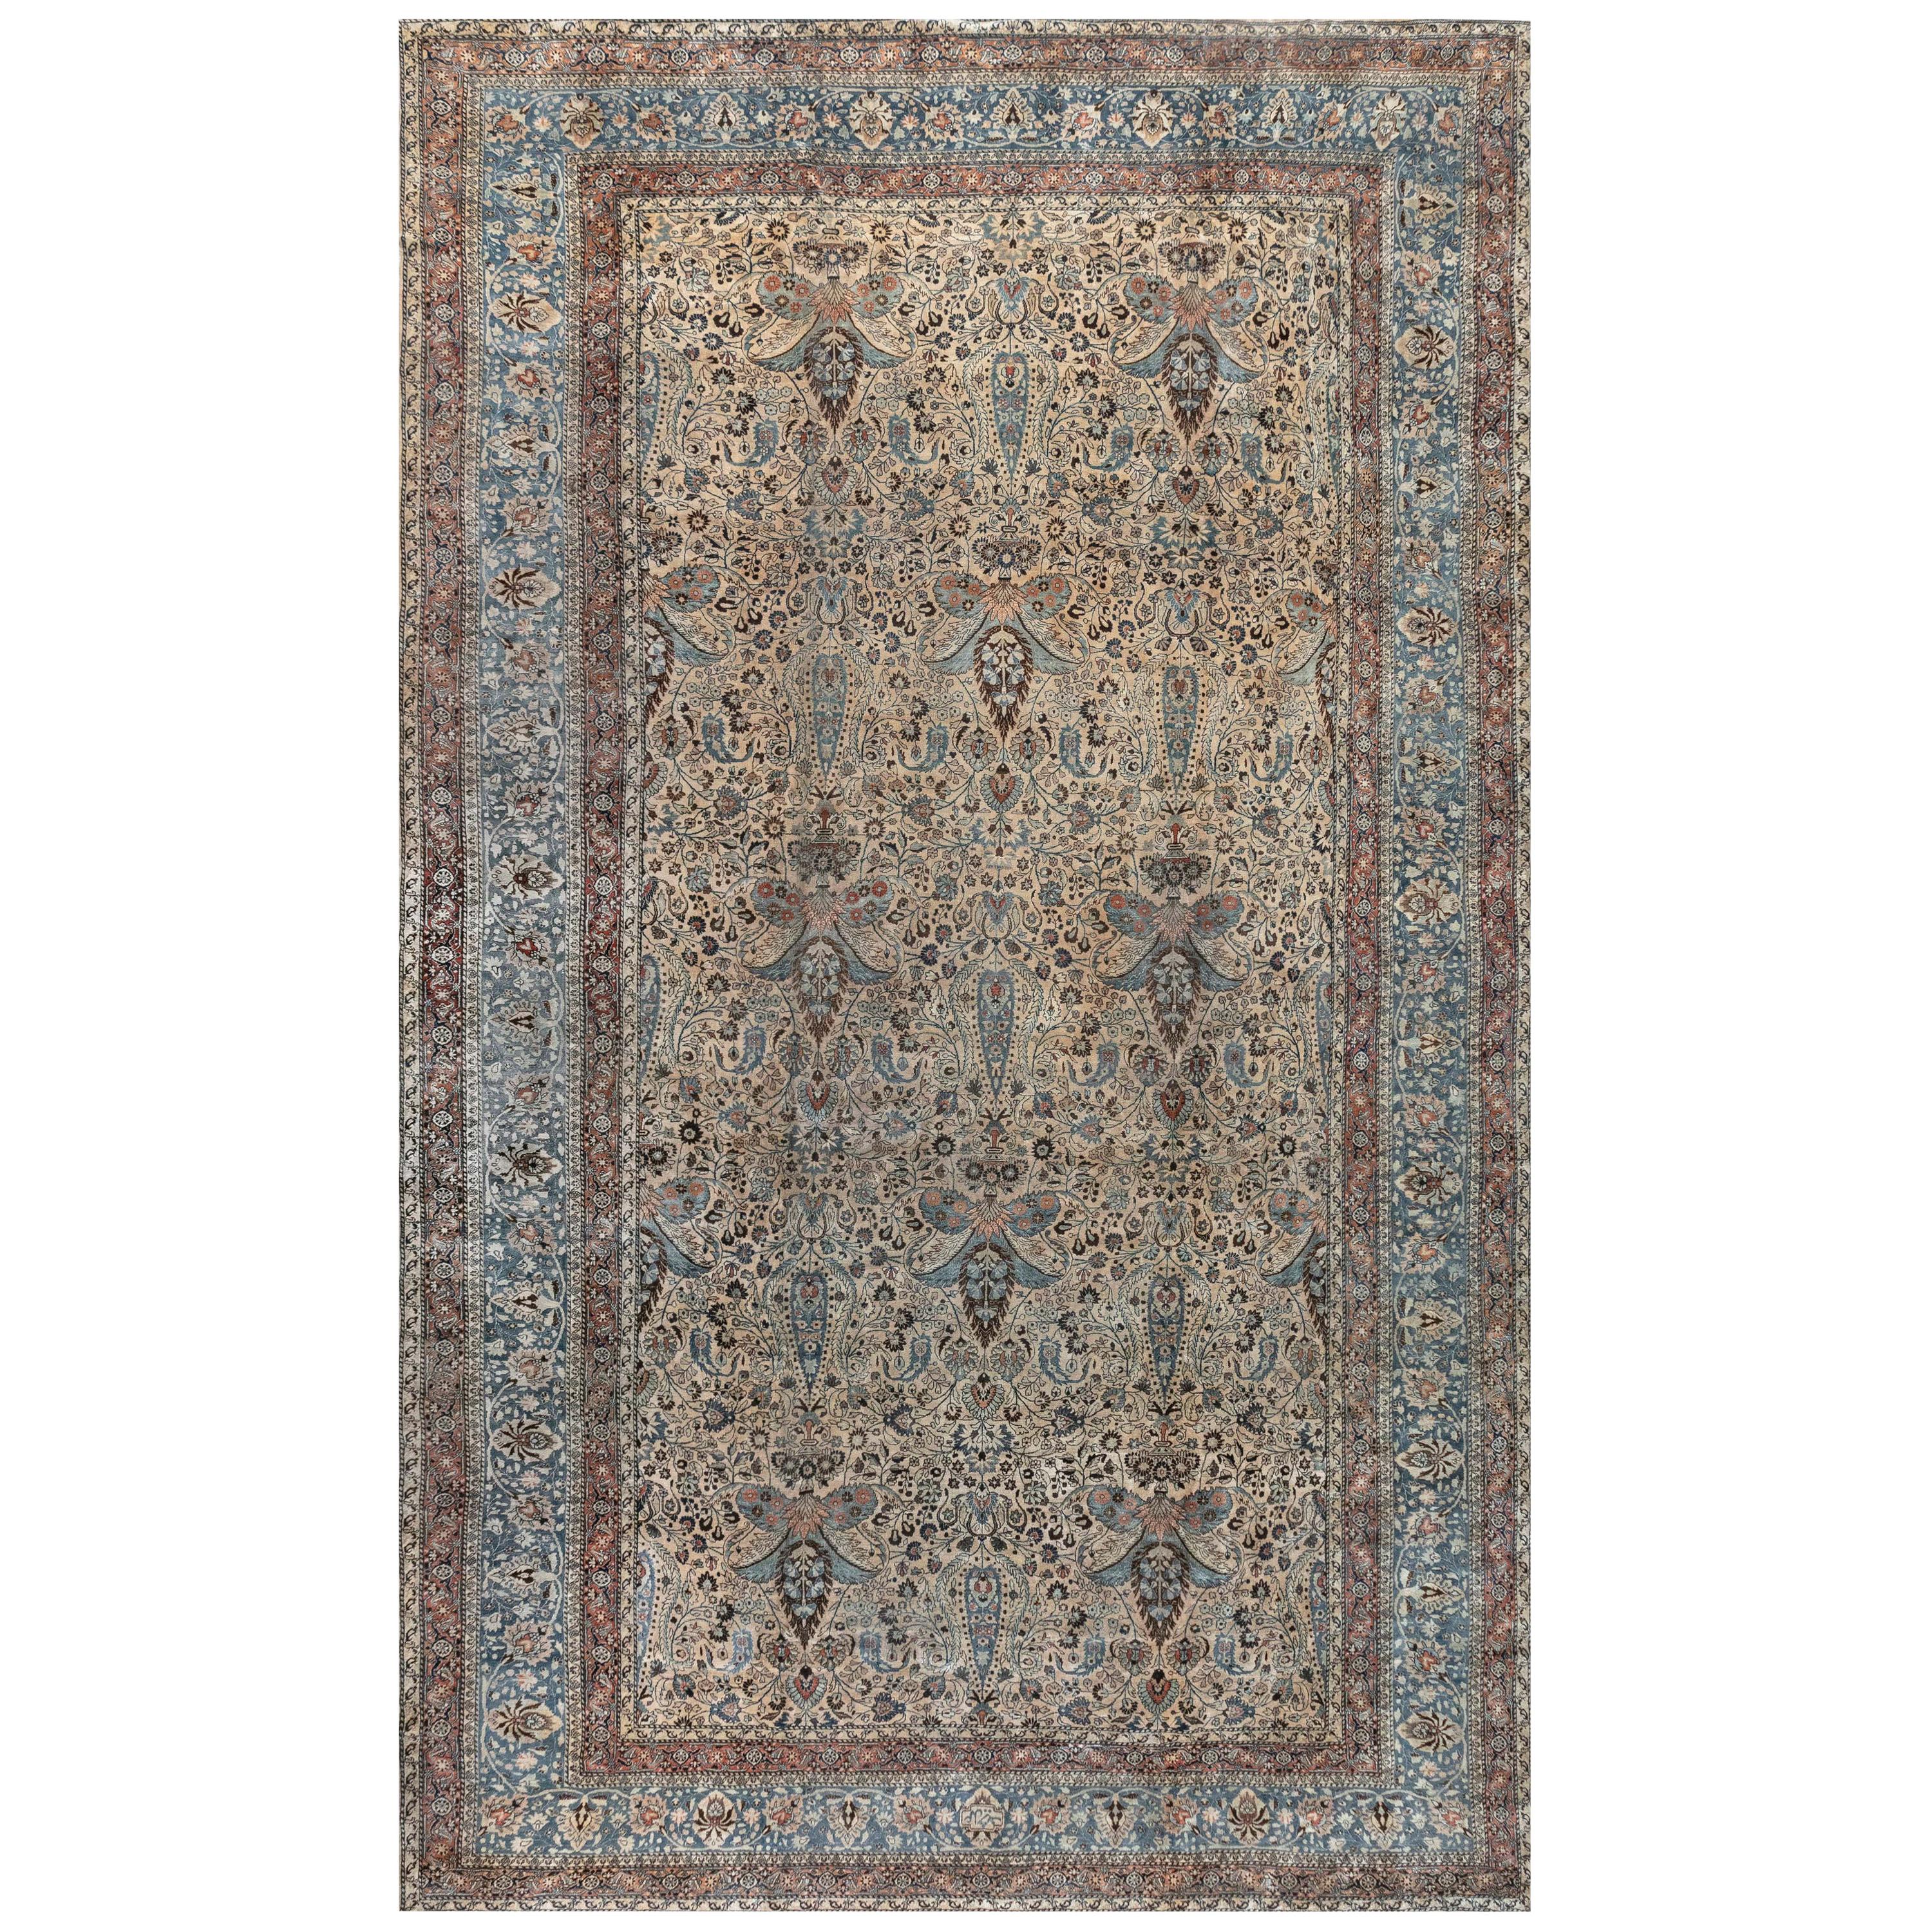 Authentischer persischer Khorassan-Teppich aus dem Jahr 1900